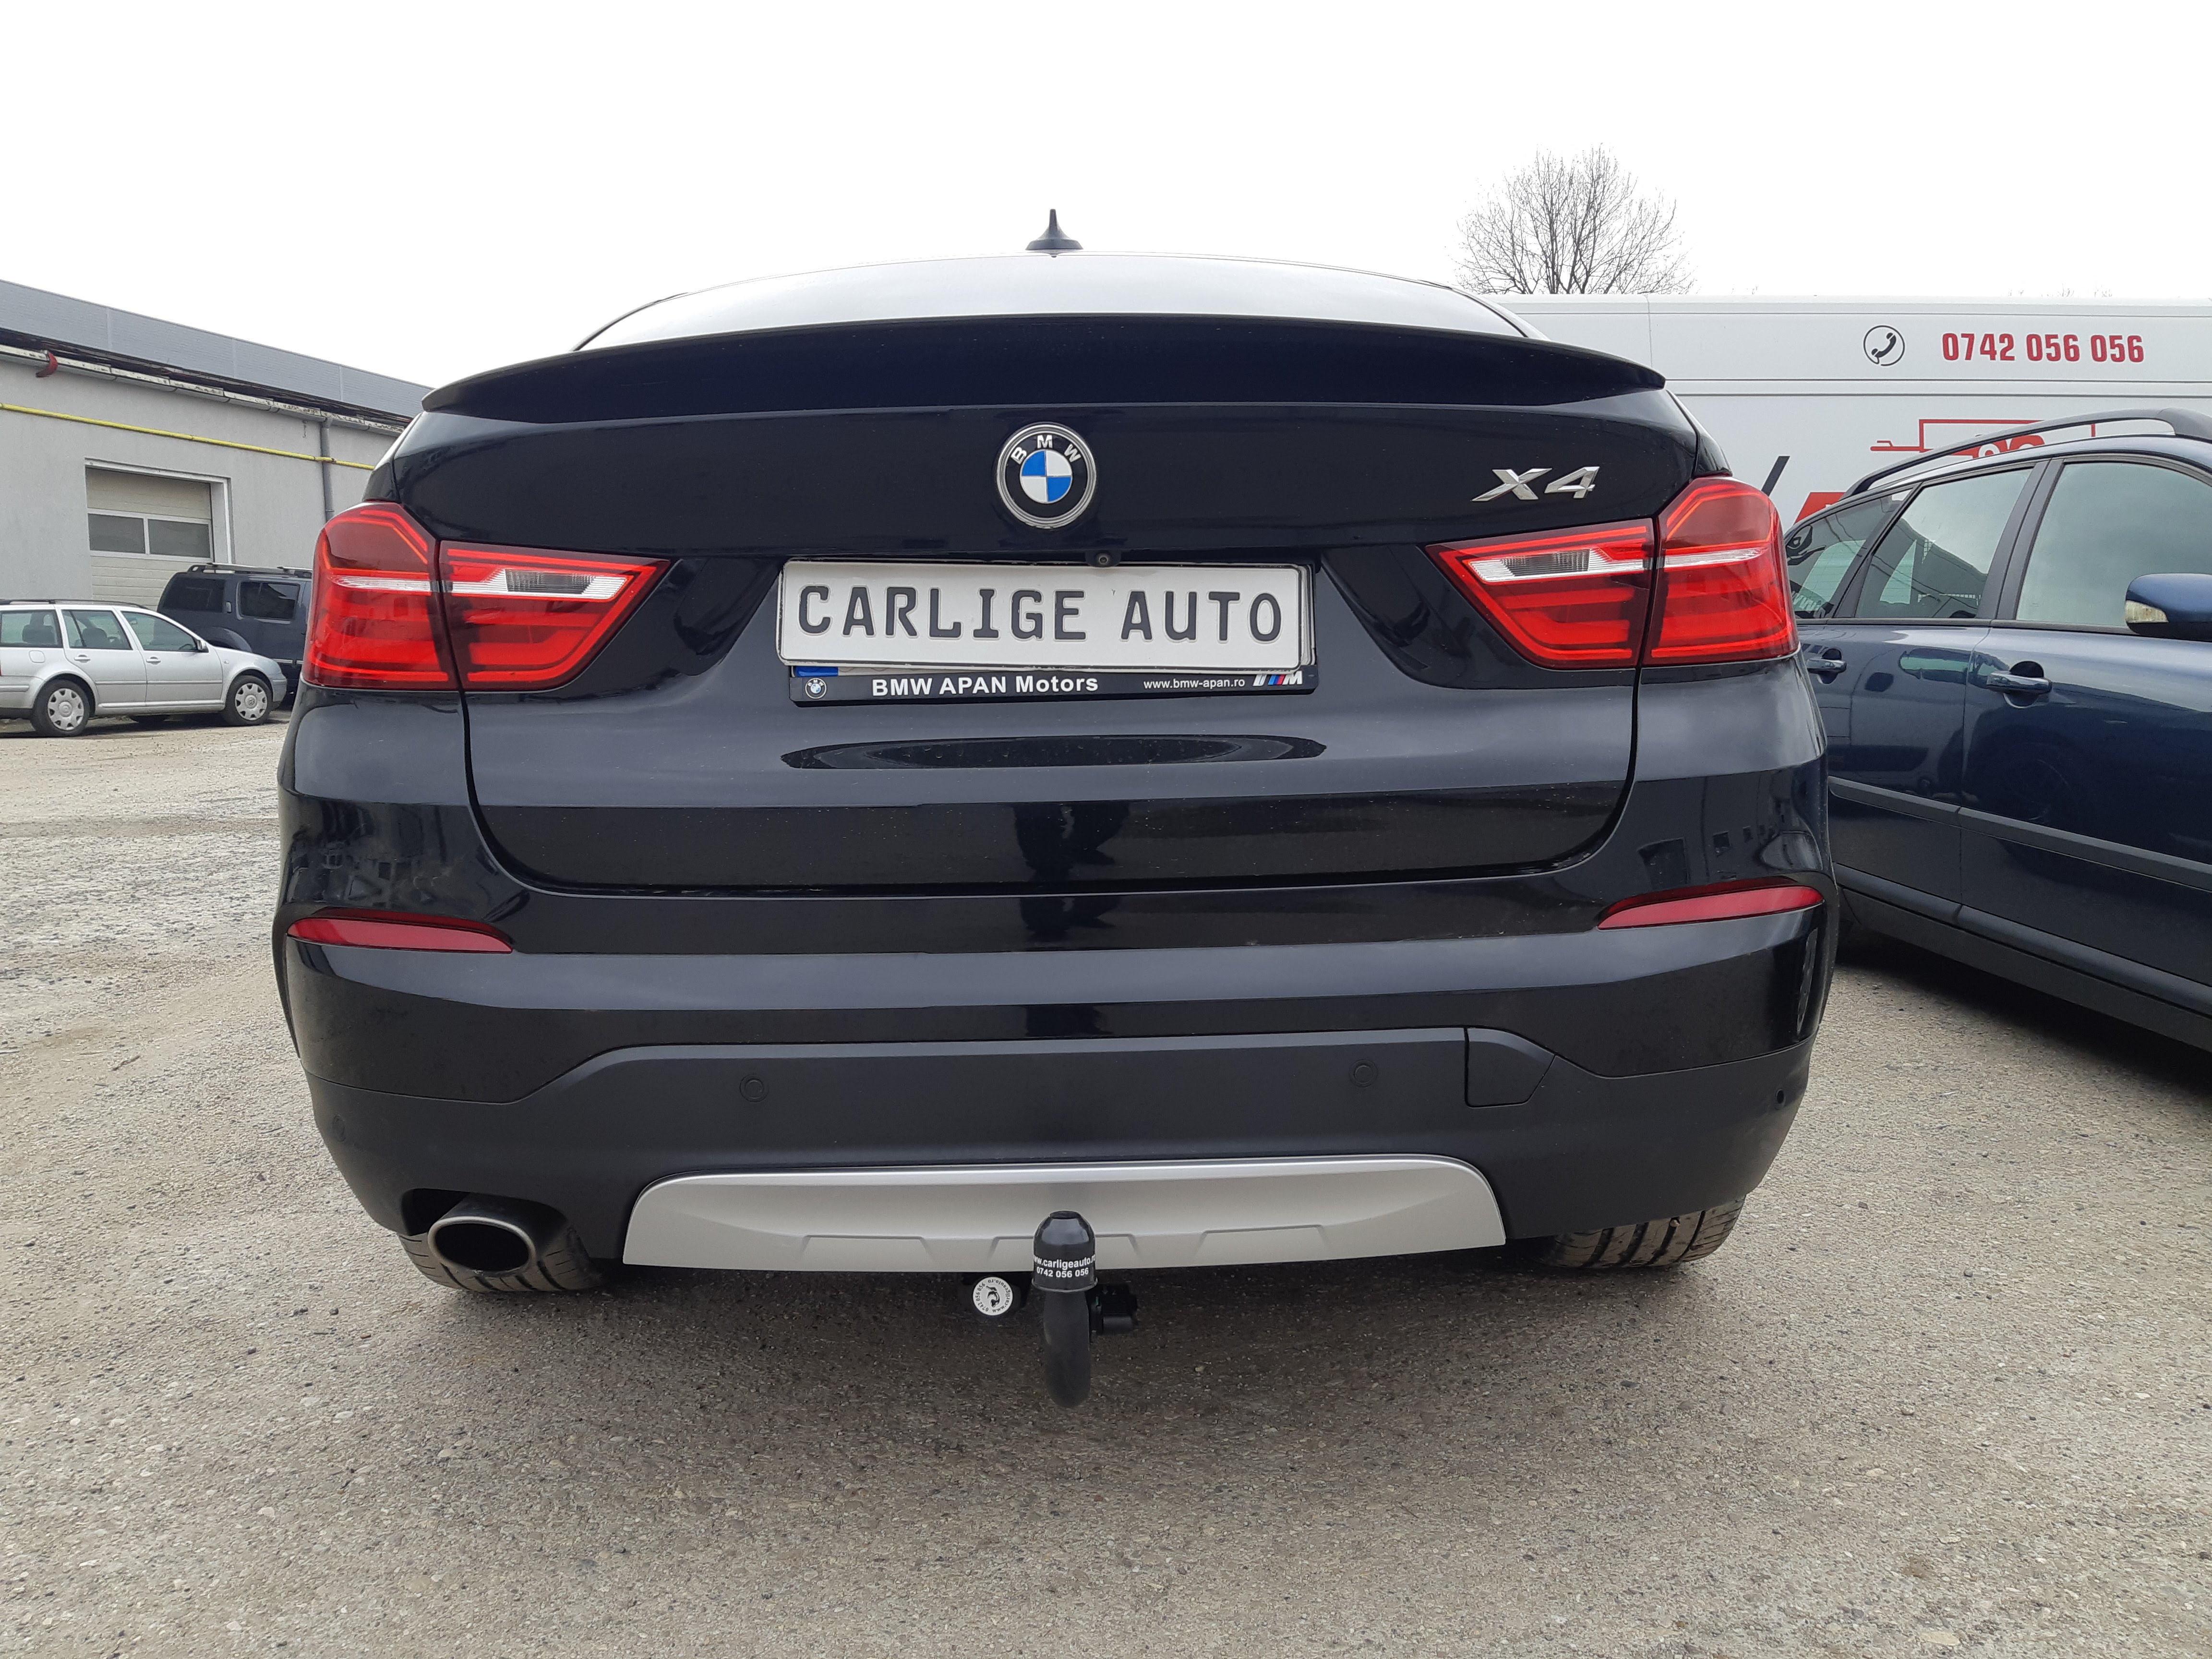 Carlig remorcare BMW X4 F26 SUV